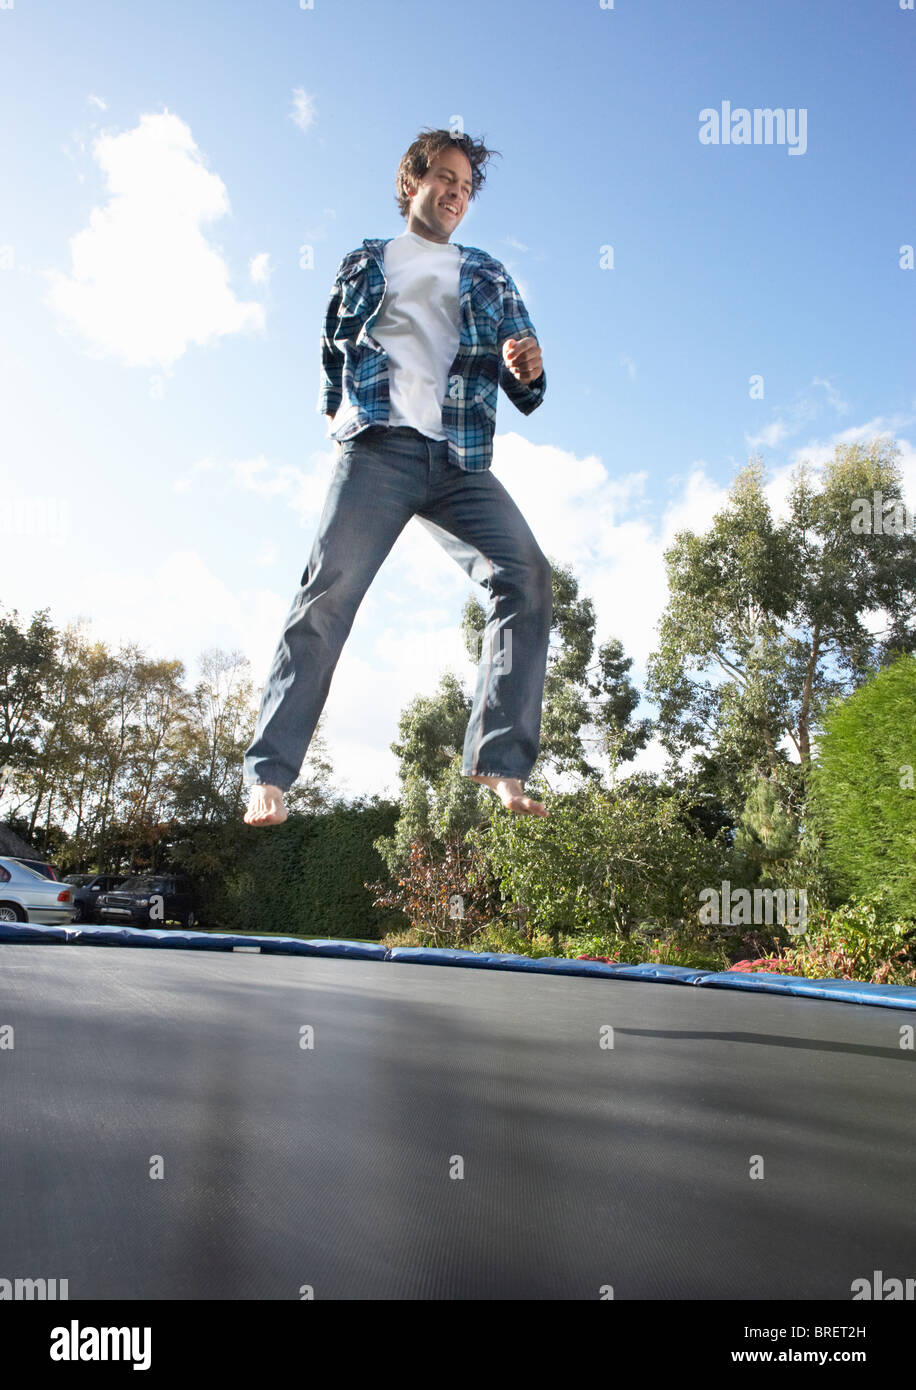 Jeune homme saut sur trampoline pris dans les airs Photo Stock - Alamy